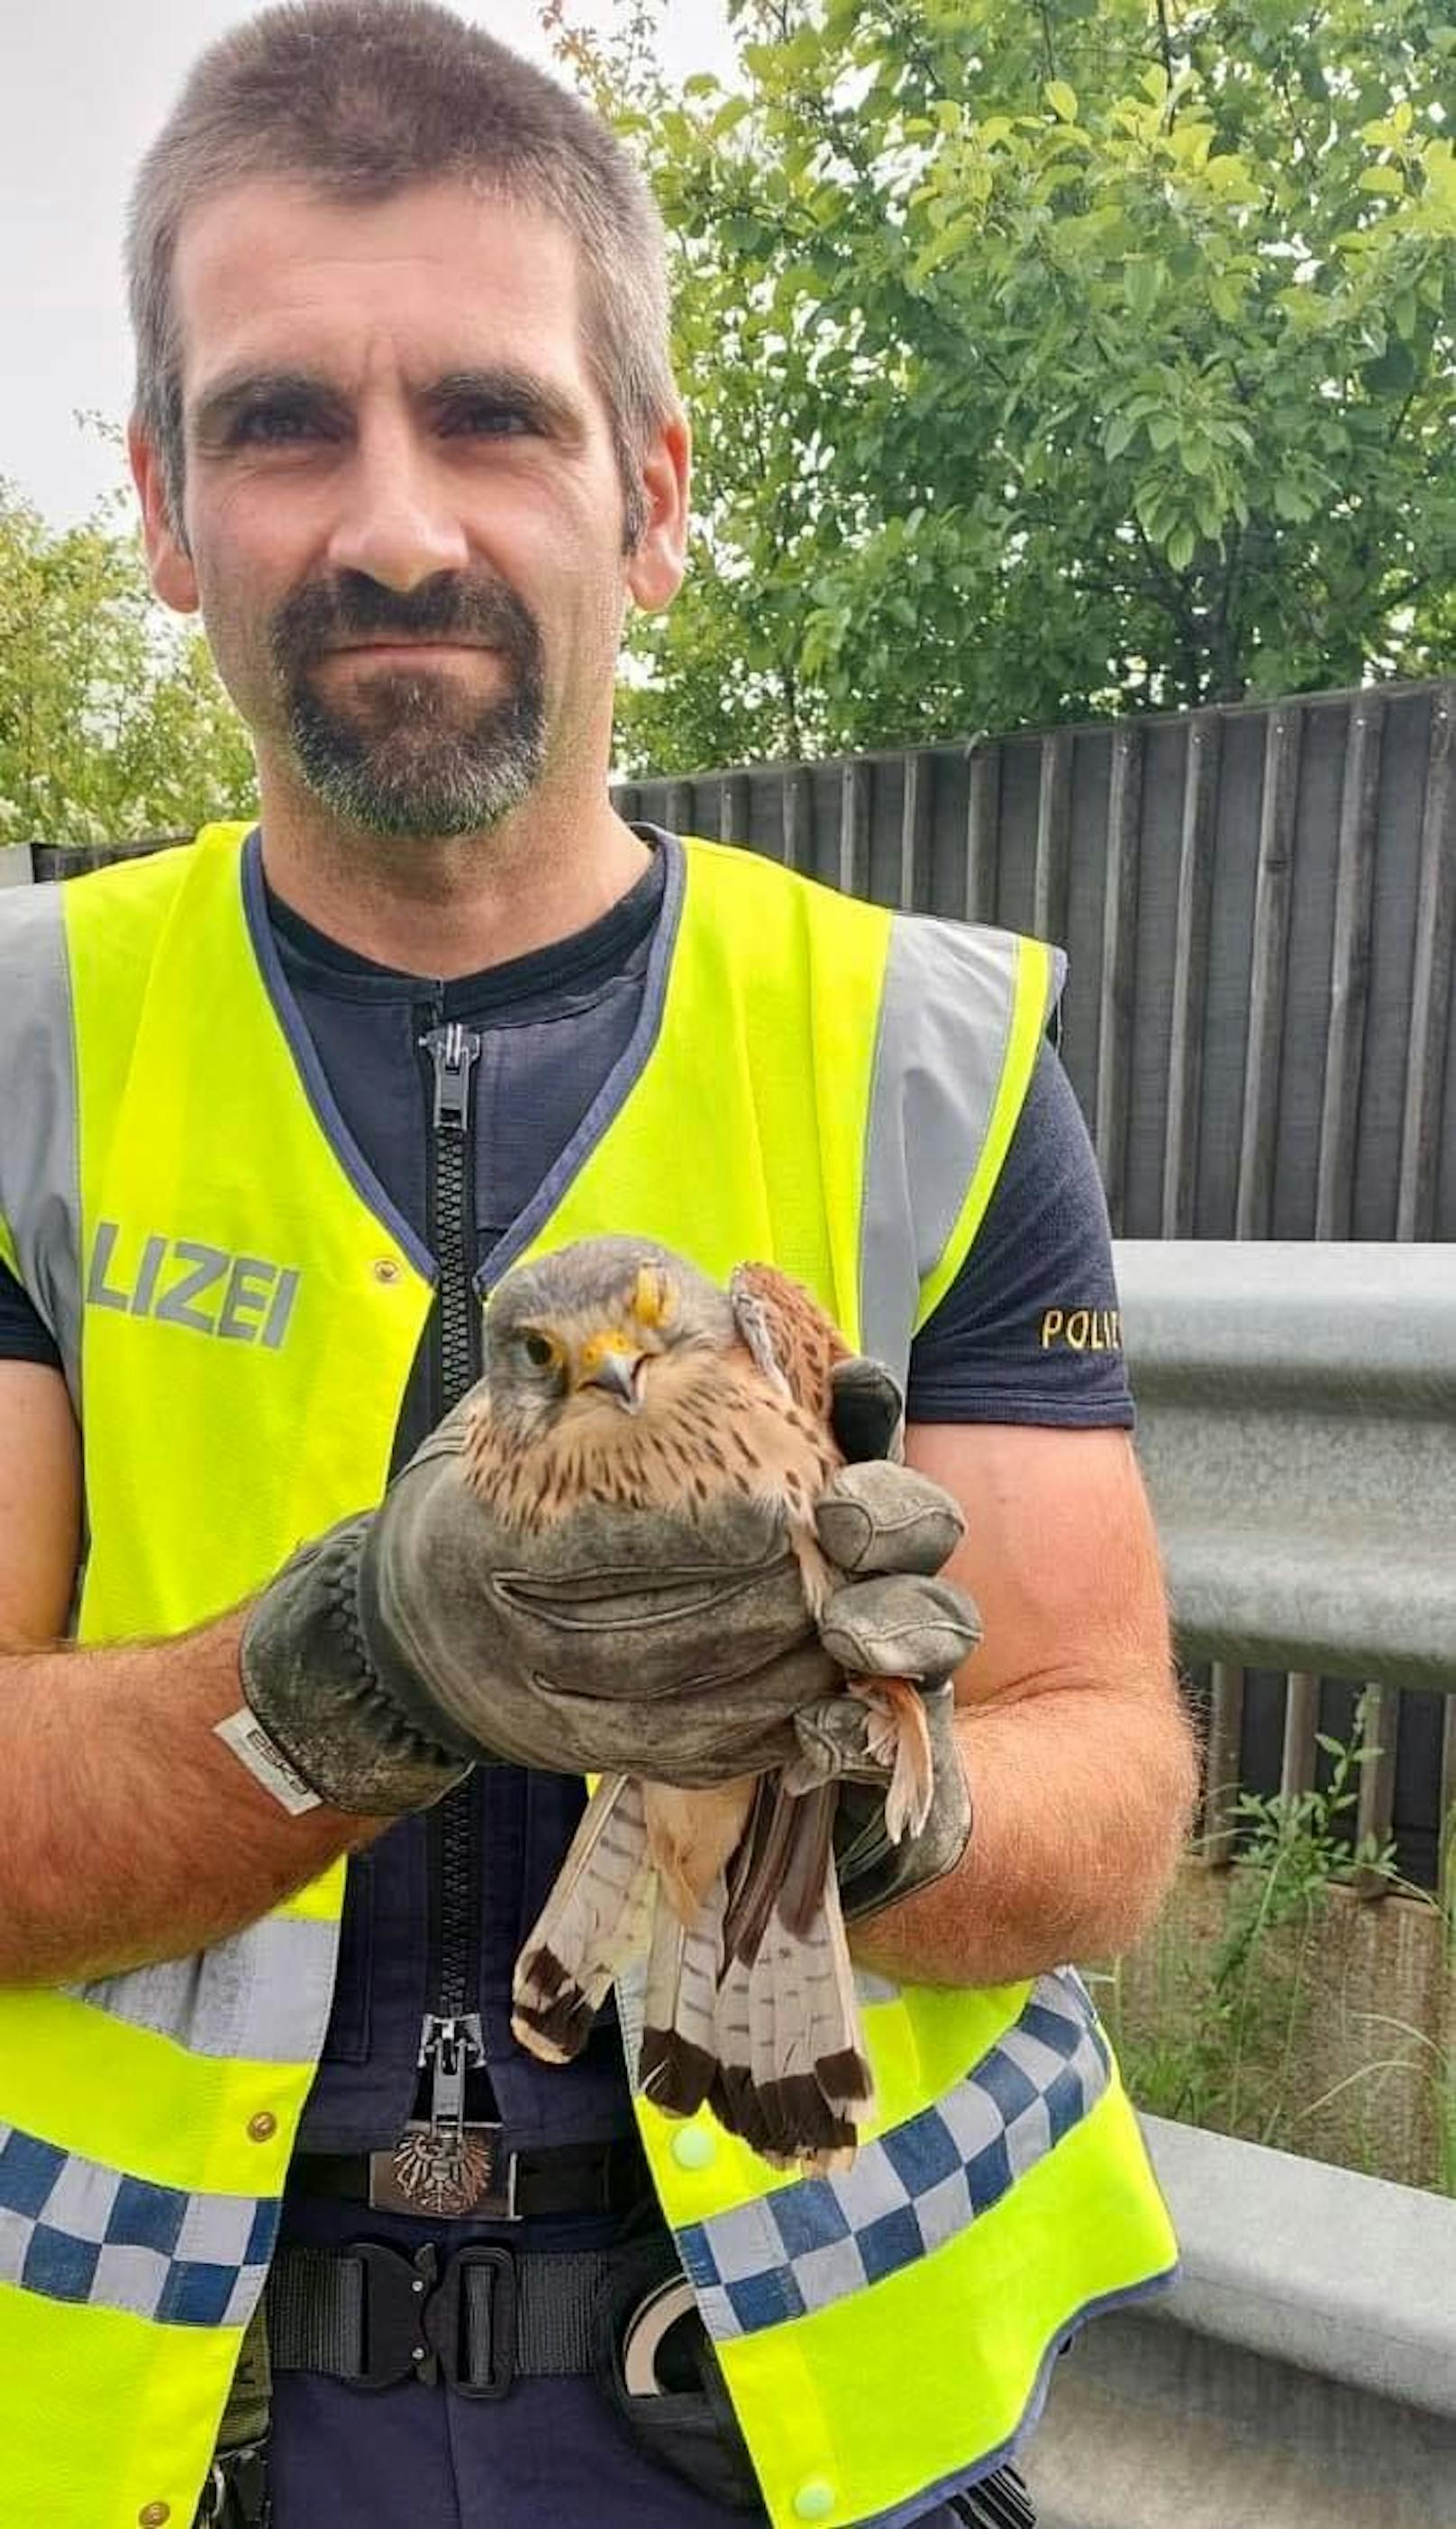 Auf der A7 entdeckte der 42-Jährige einen Falken. Mit der Polizei-Kappe wurde der Vogel eingefangen.